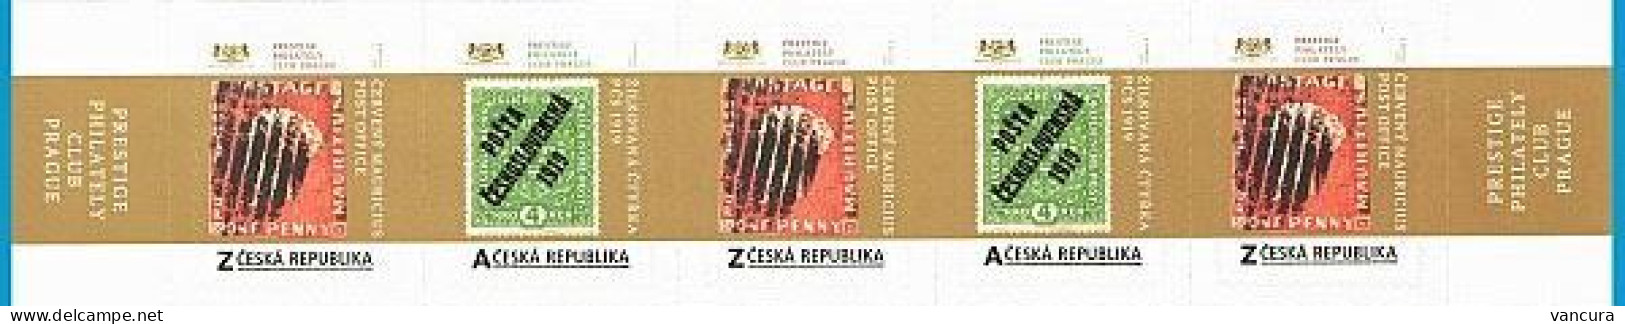 Czech Republic Treasures Of The World Philately 2020 - Briefmarken Auf Briefmarken